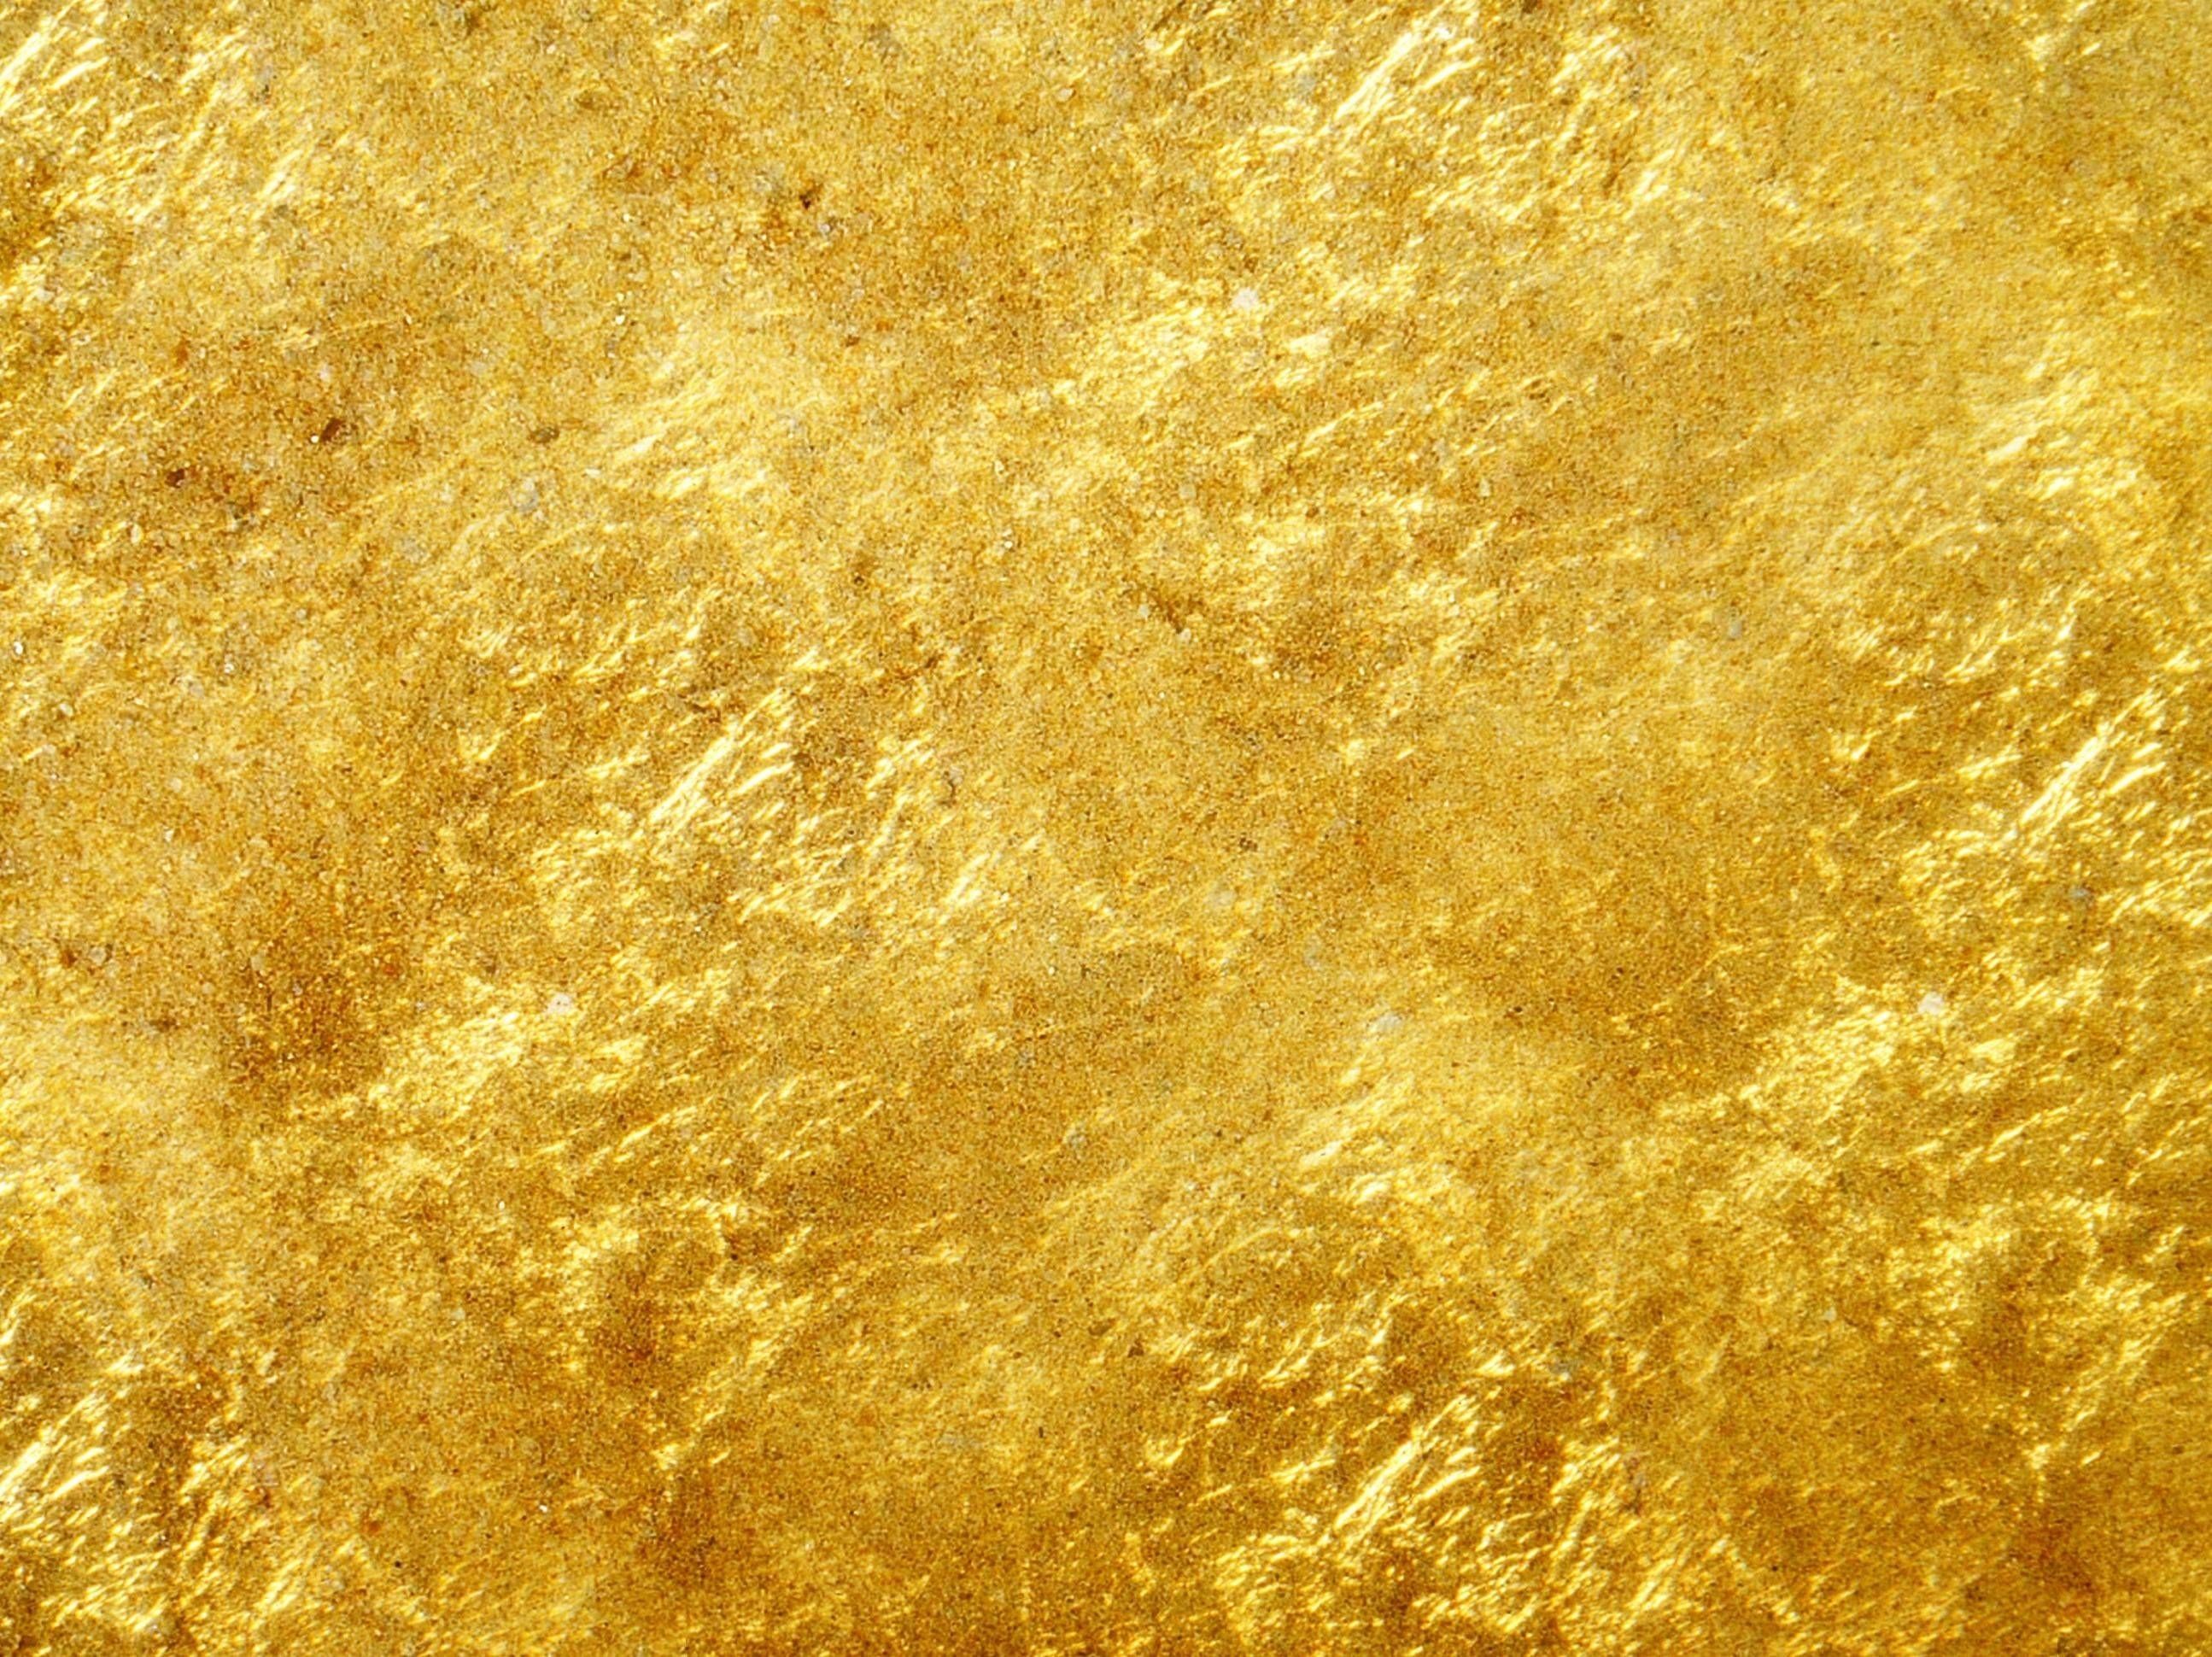 gold foil background